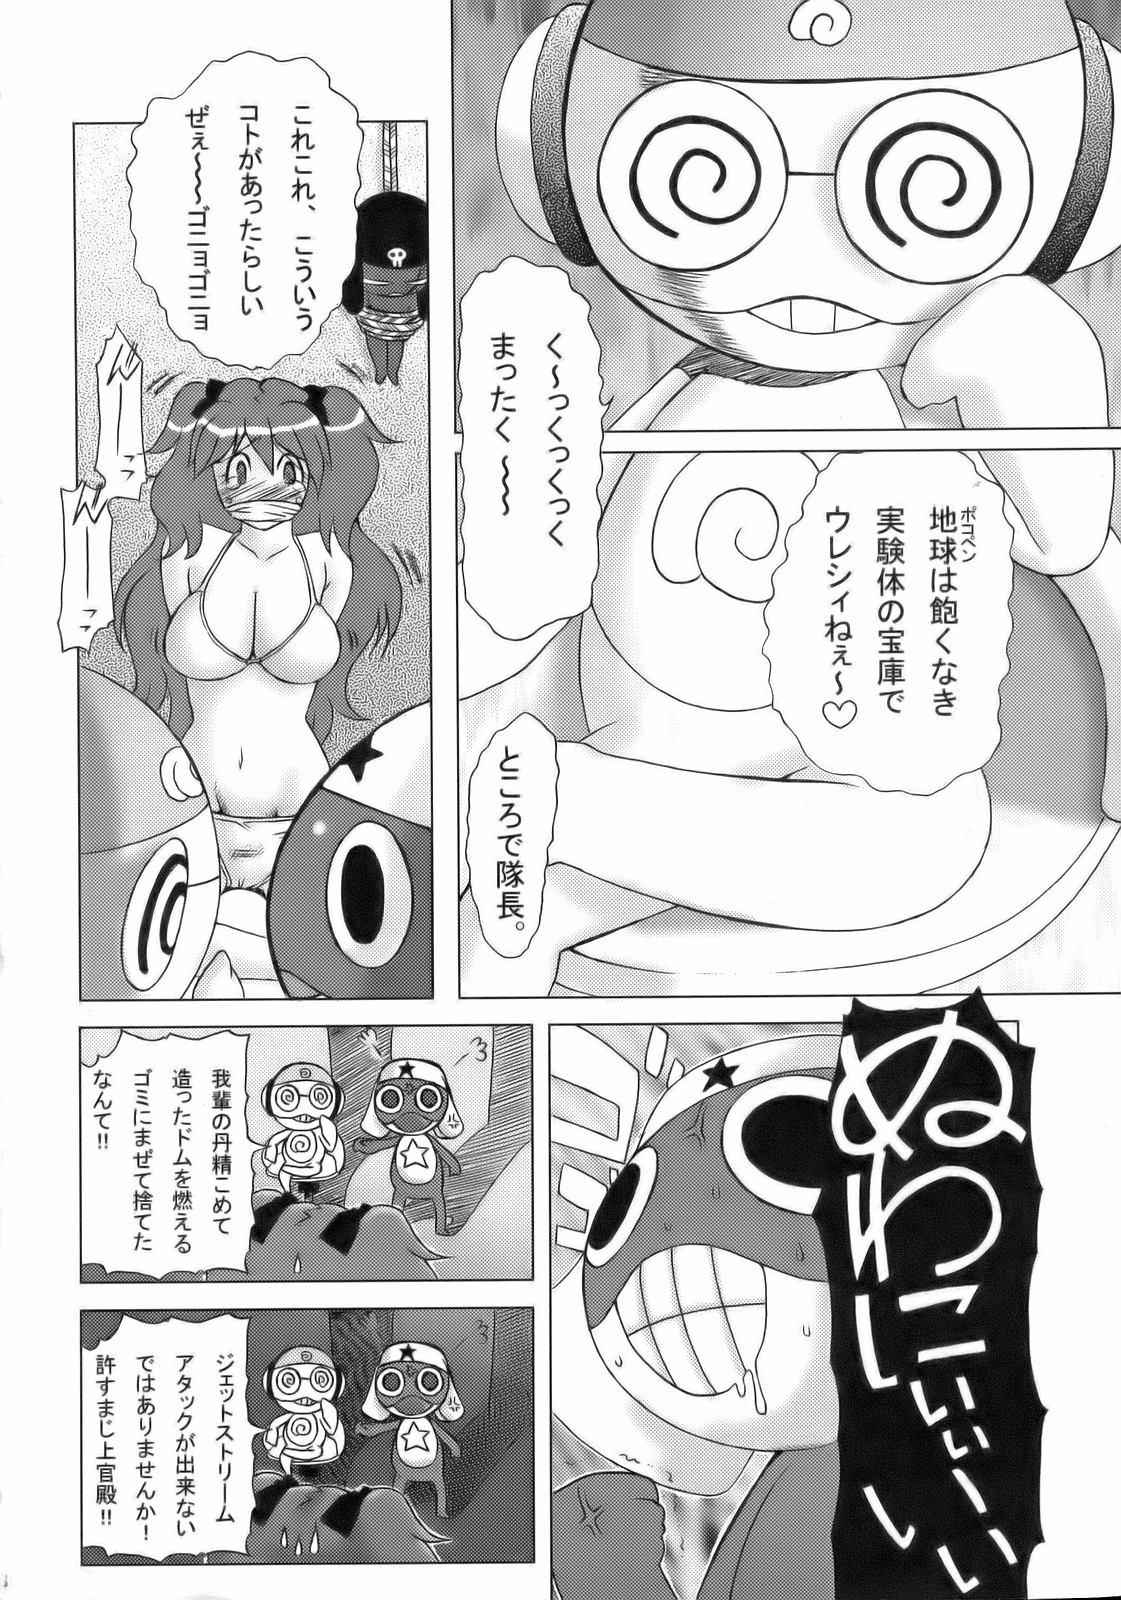 Bikini Ero no Gunzou 3 - Keroro gunsou Tiny Titties - Page 5